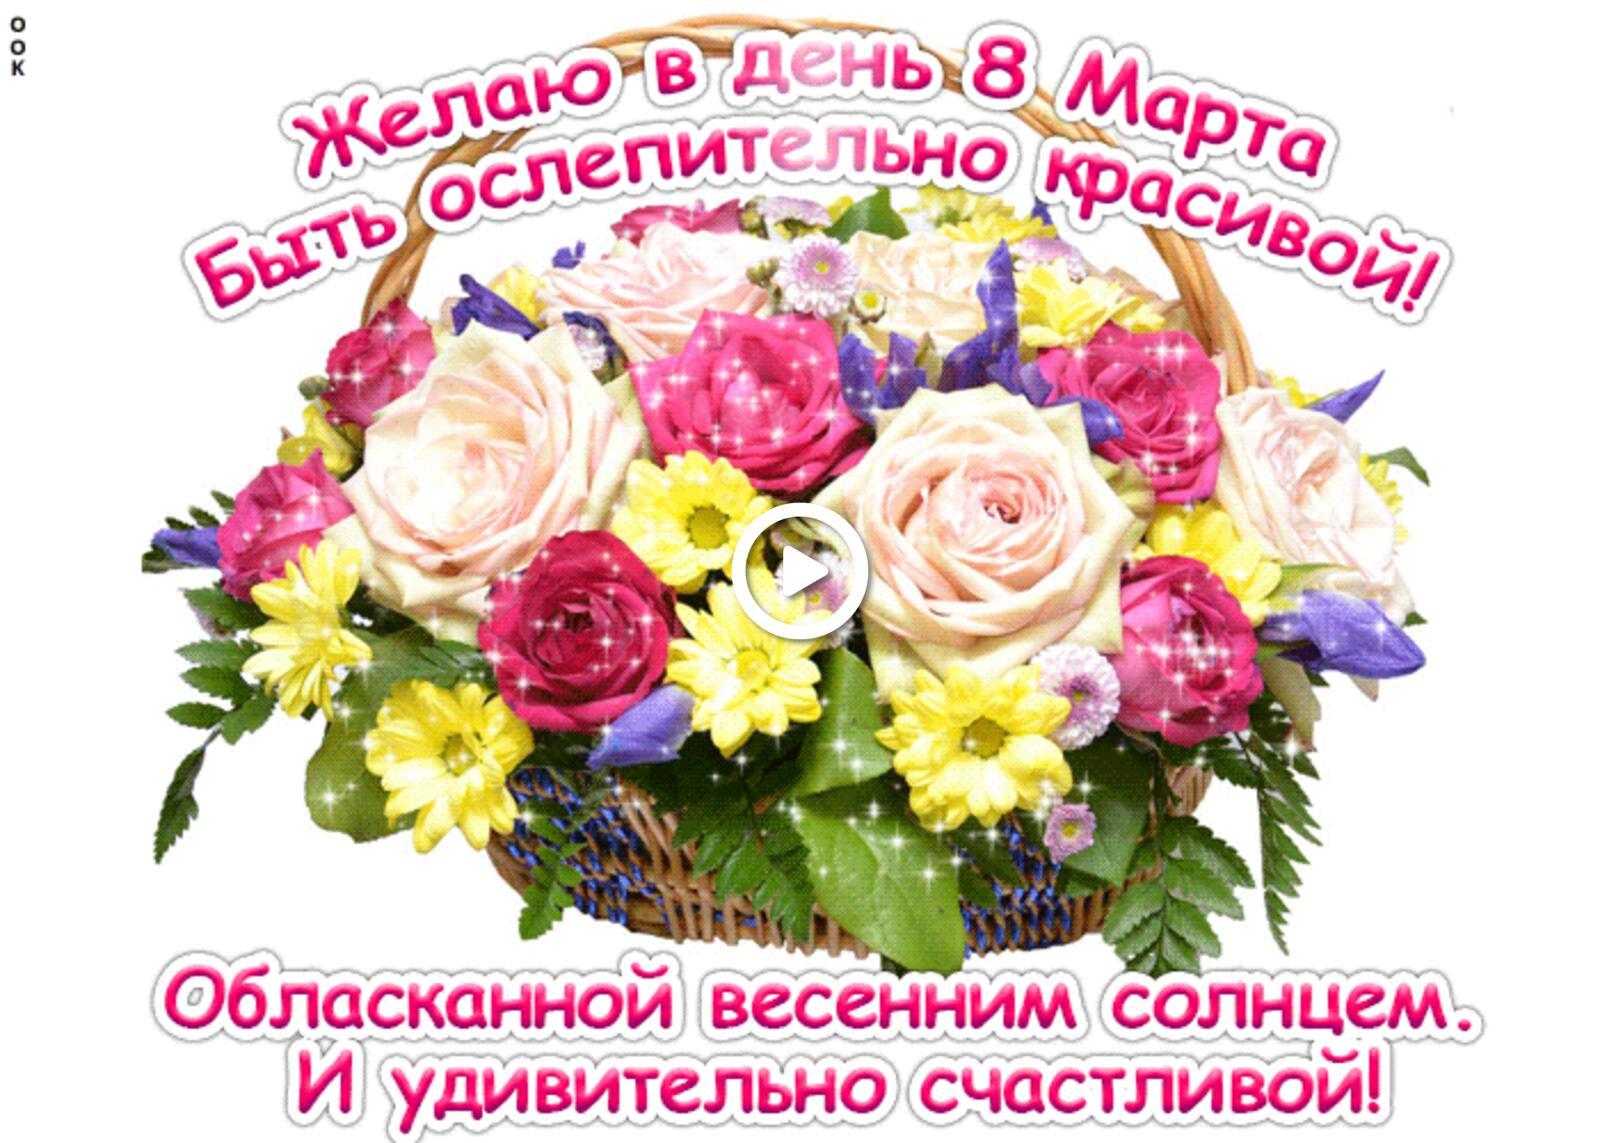 一张以3月8日的祝愿 节日 鲜花为主题的明信片